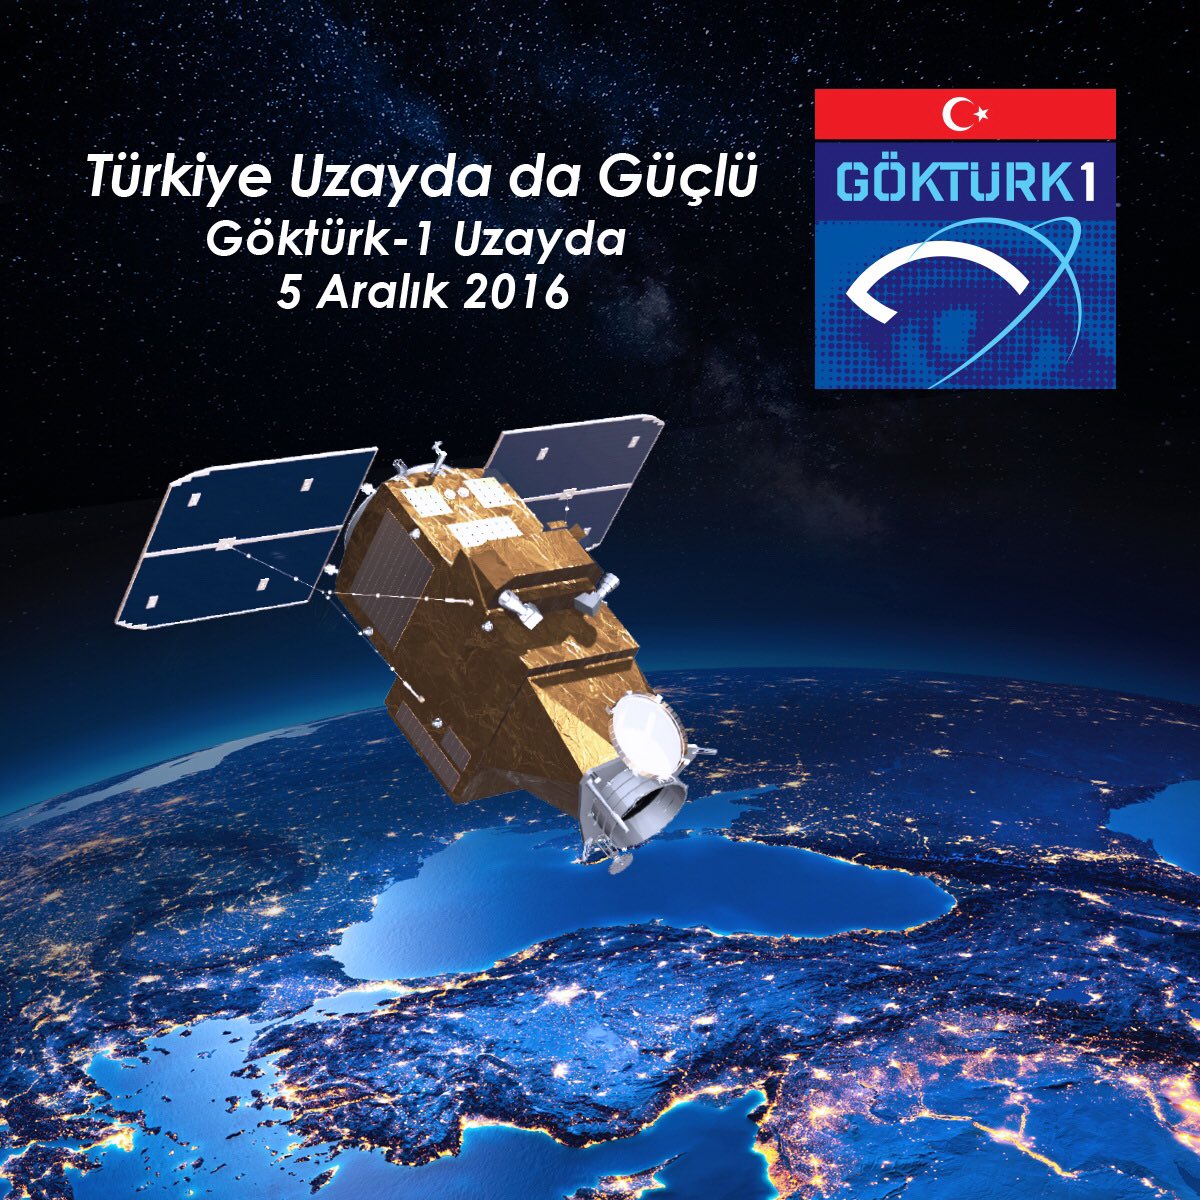 Bugün uzaya fırlatılan Göktürk-1 Keşif Gözetleme Uydumuz, ülkemiz, milletimiz ve Türk Silahlı Kuvvetlerimiz için hayırlı uğurlu olsun.